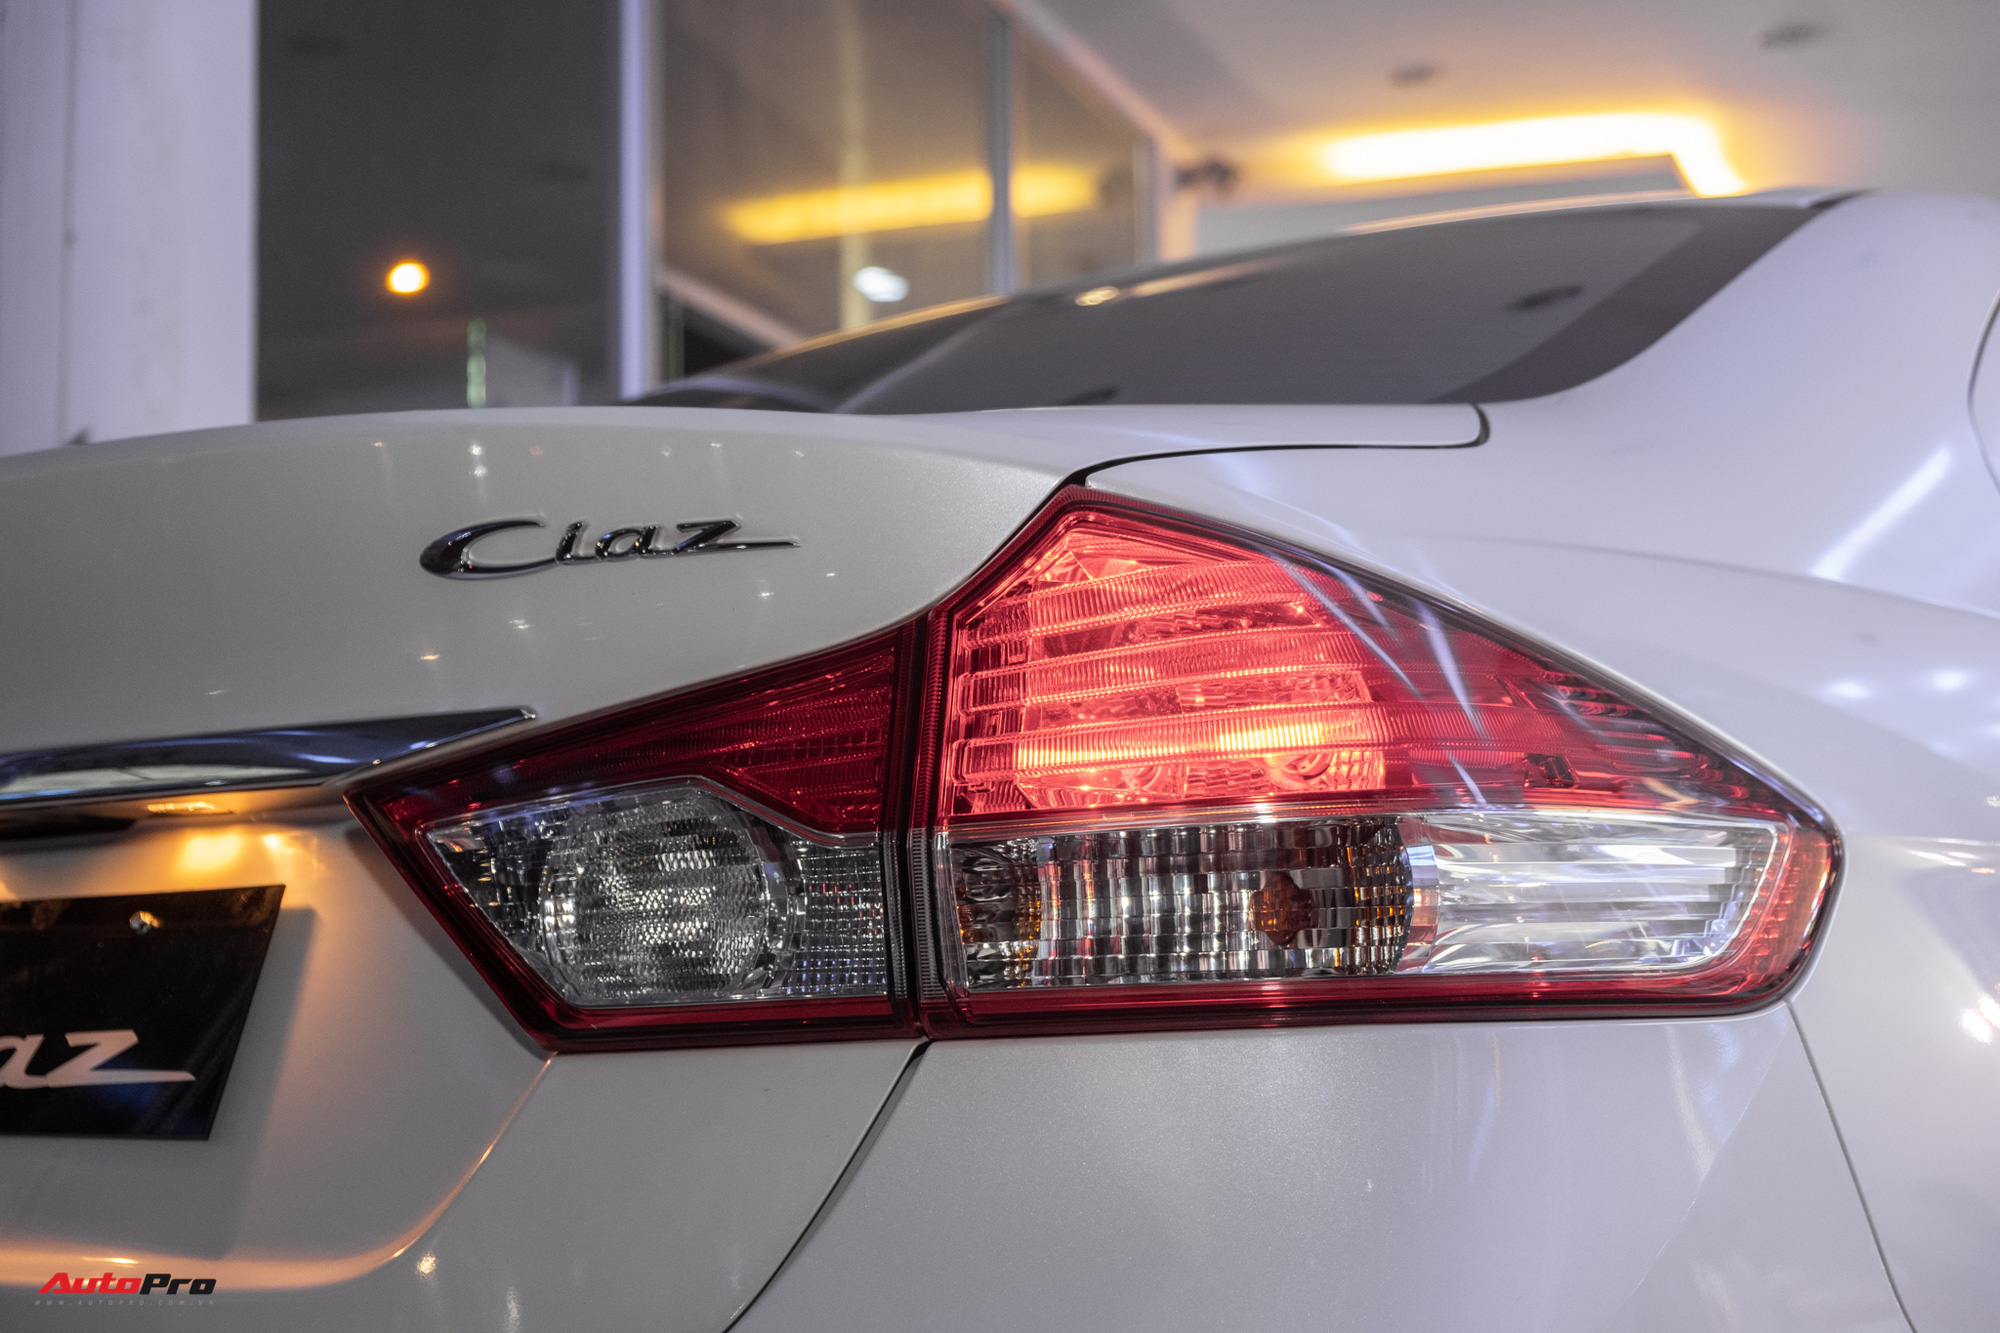 Khám phá Suzuki Ciaz 2020 giá 529 triệu đồng tại Việt Nam: Thiếu nhiều tính năng cơ bản - Ảnh 6.